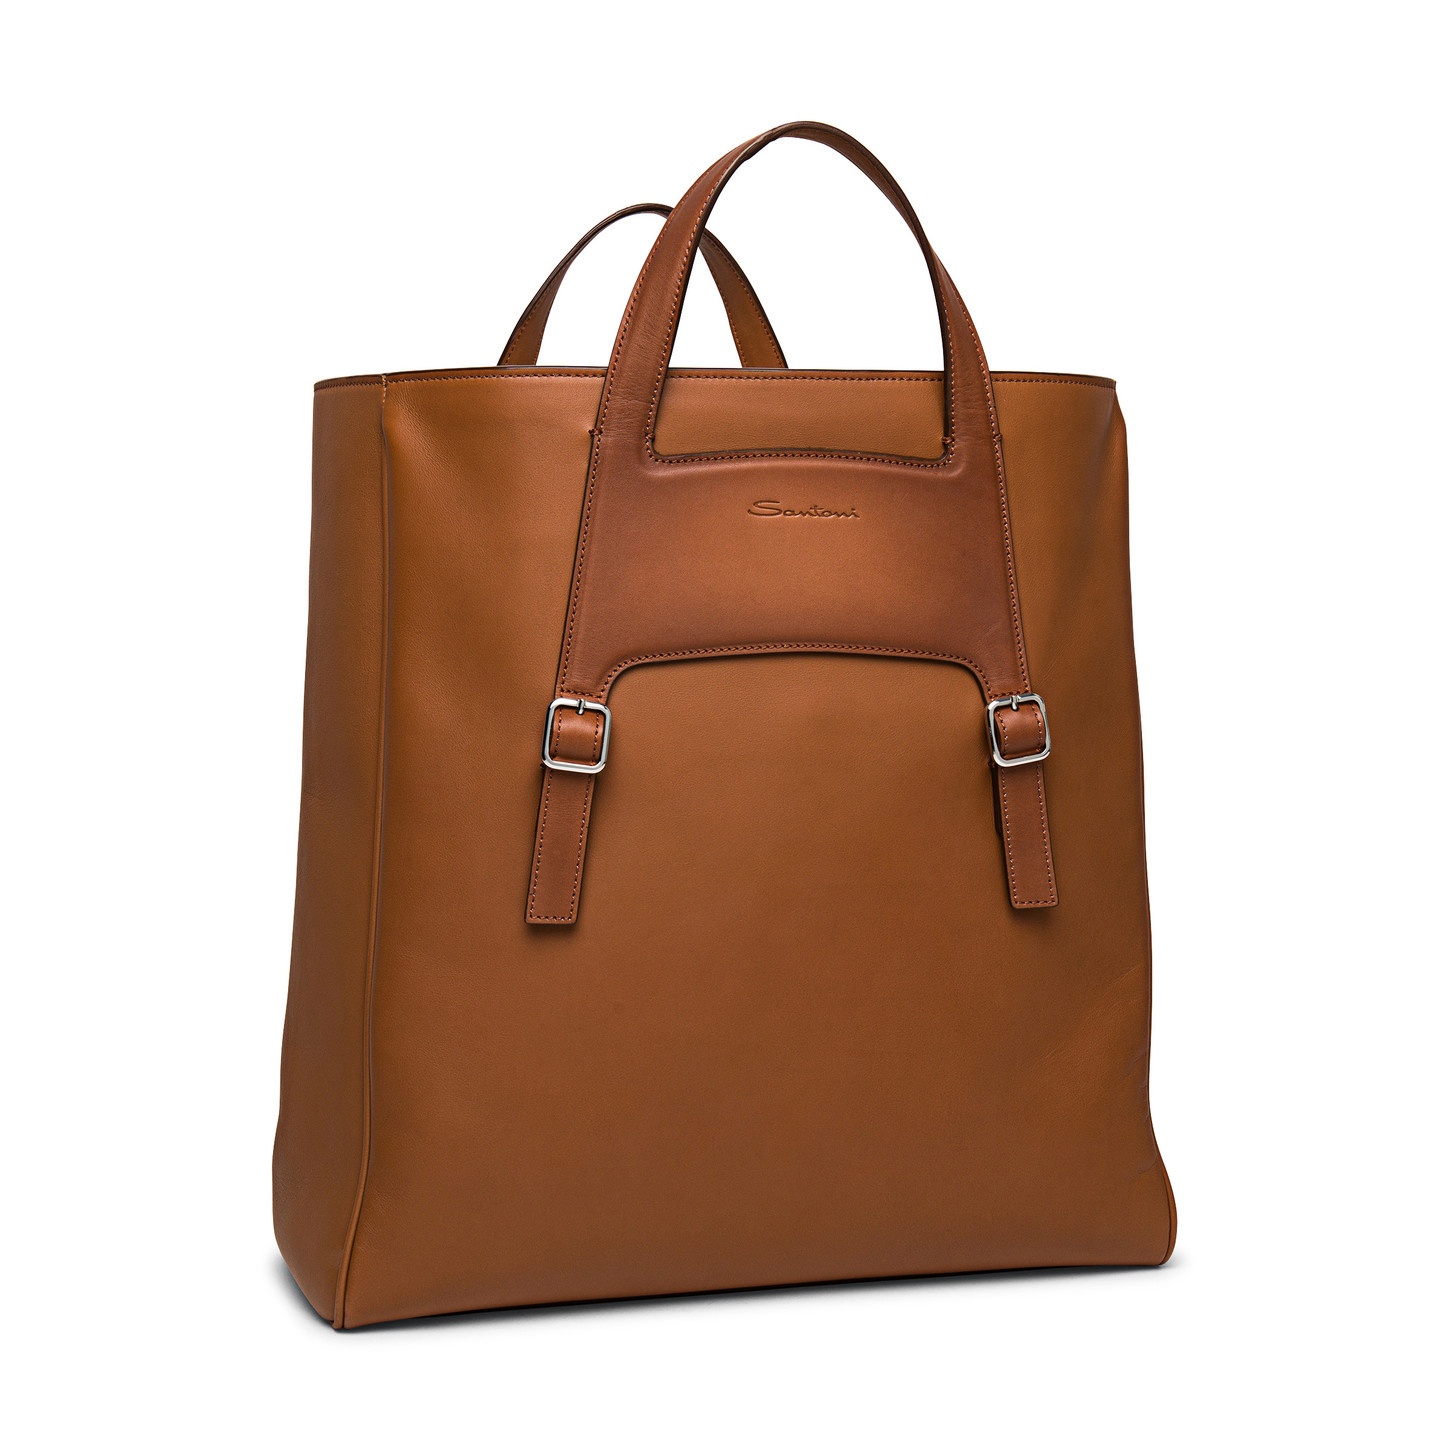 Brown leather handbag - 4